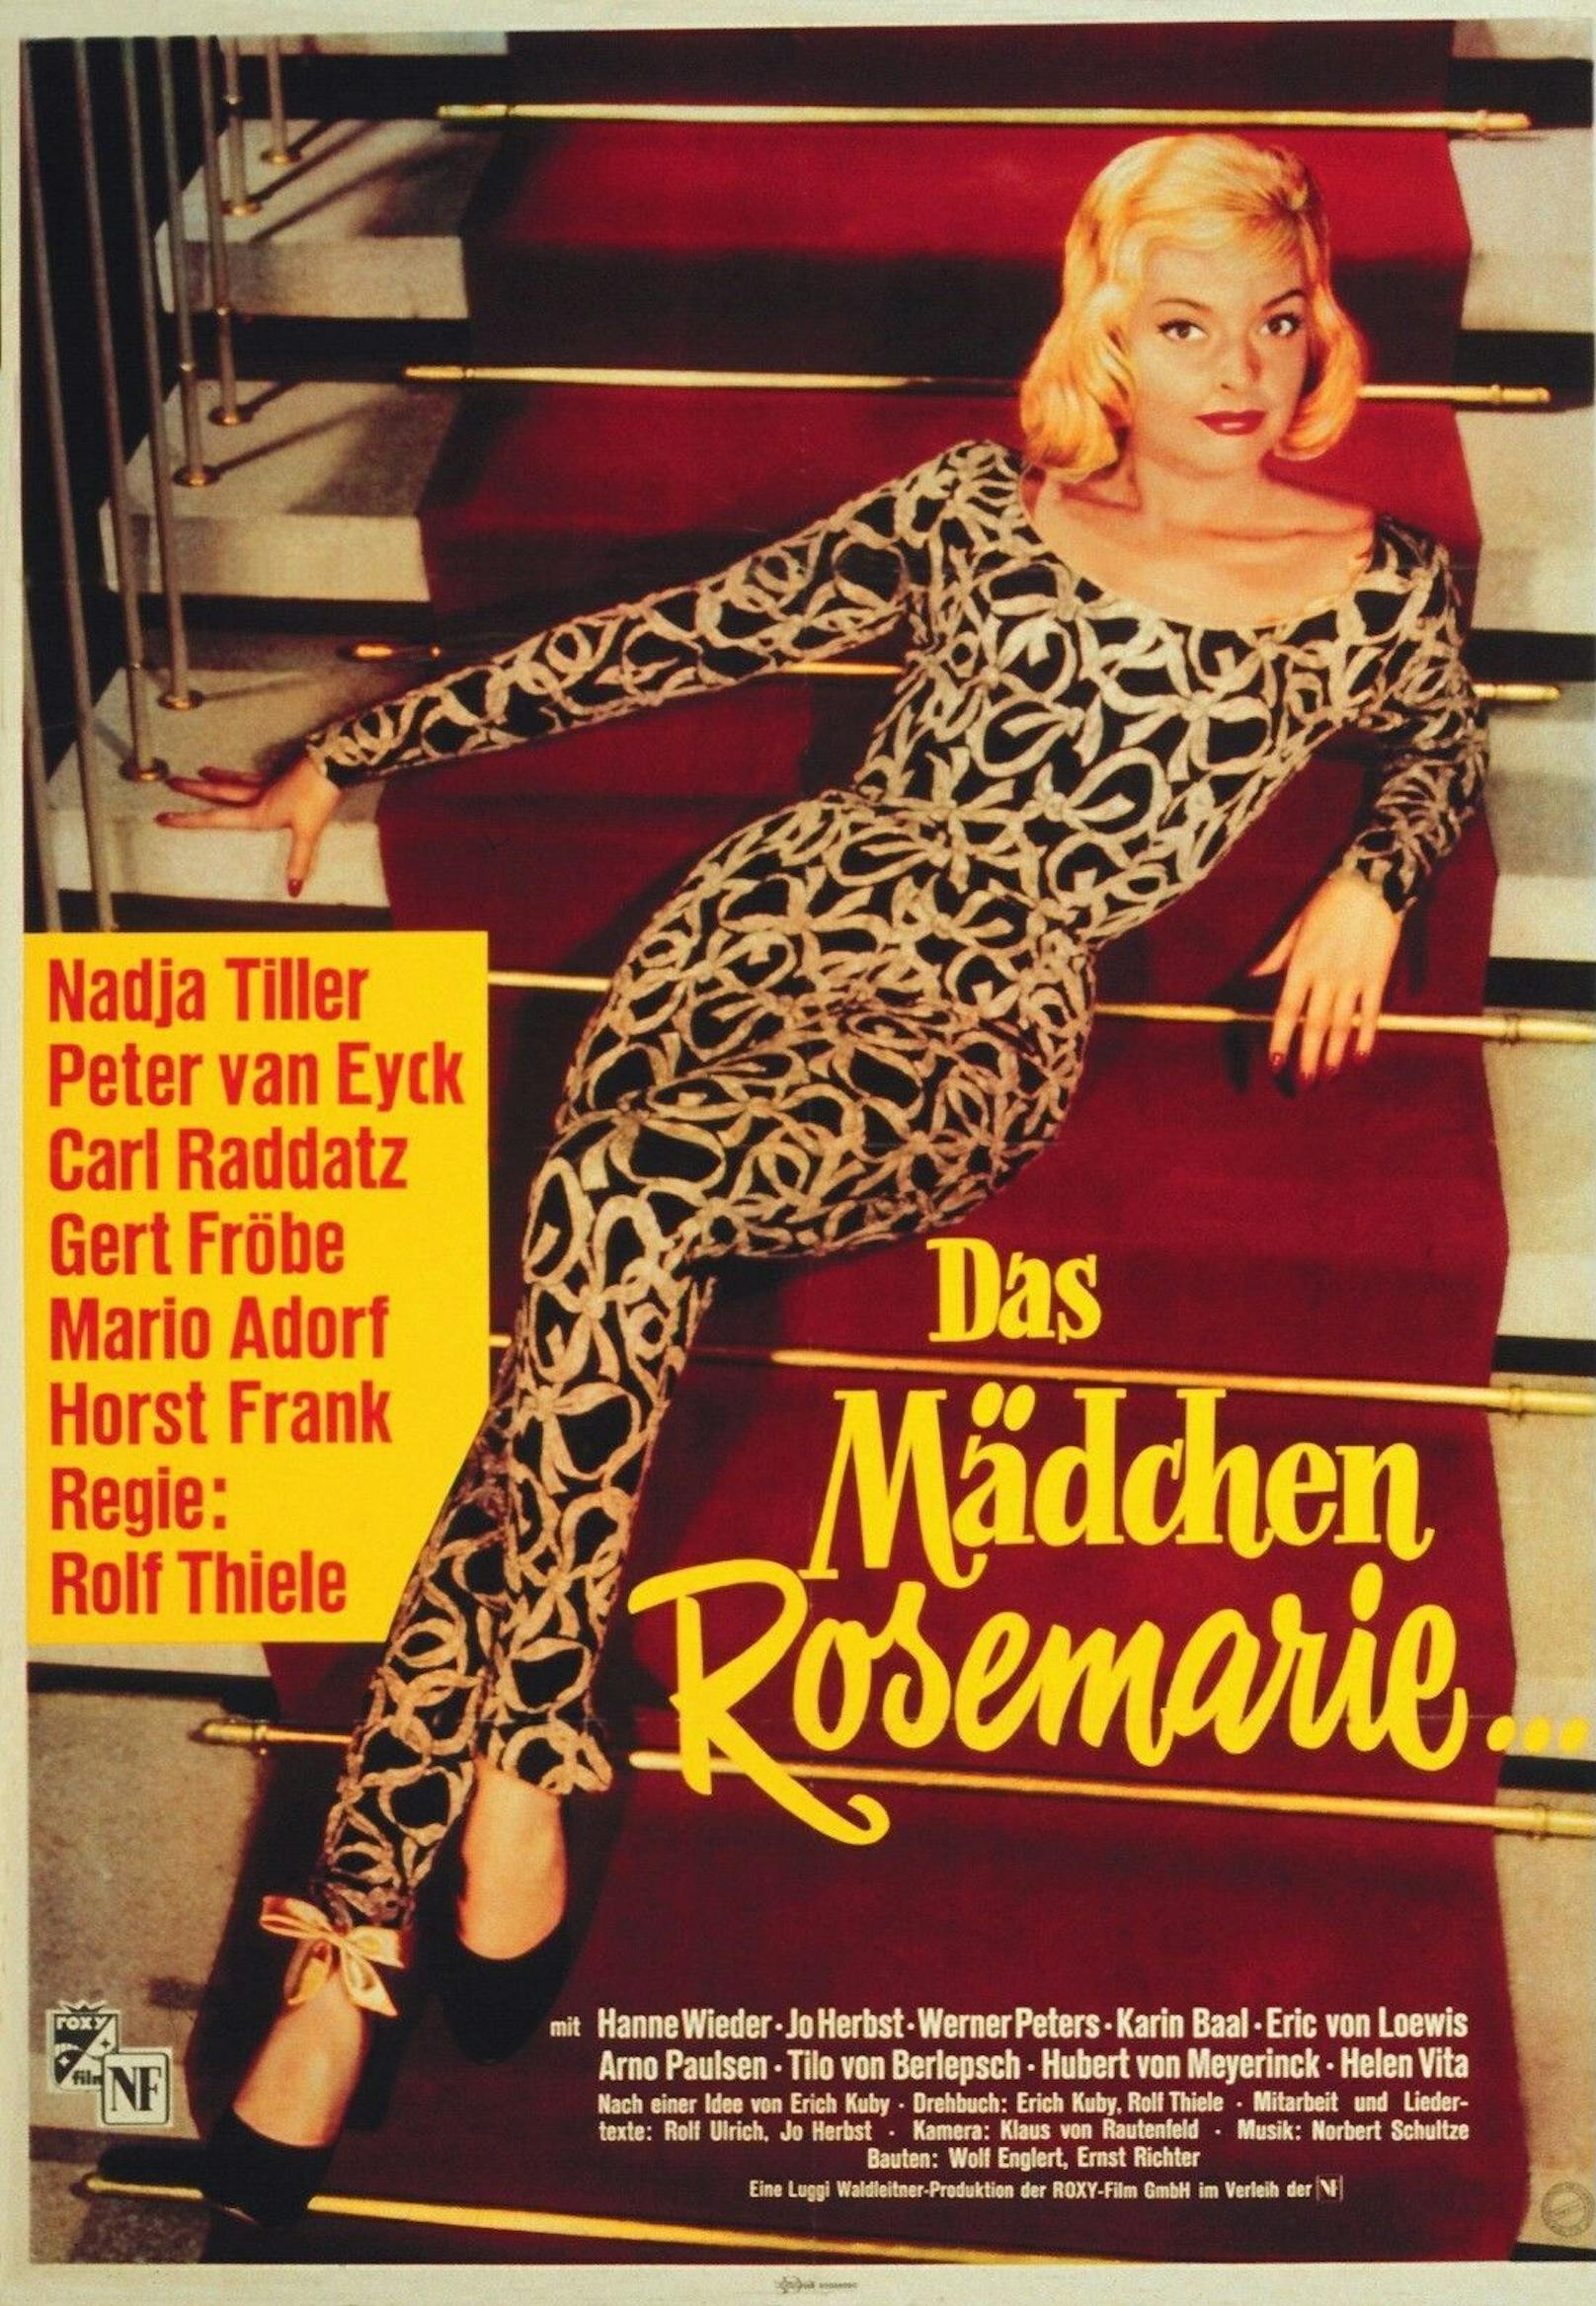 Ihren internationalen Durchbruch hatte sie 1958 in "Das Mädchen Rosemarie" als Darstellerin der Frankfurter Edelhure Rosemarie Nitribitt.